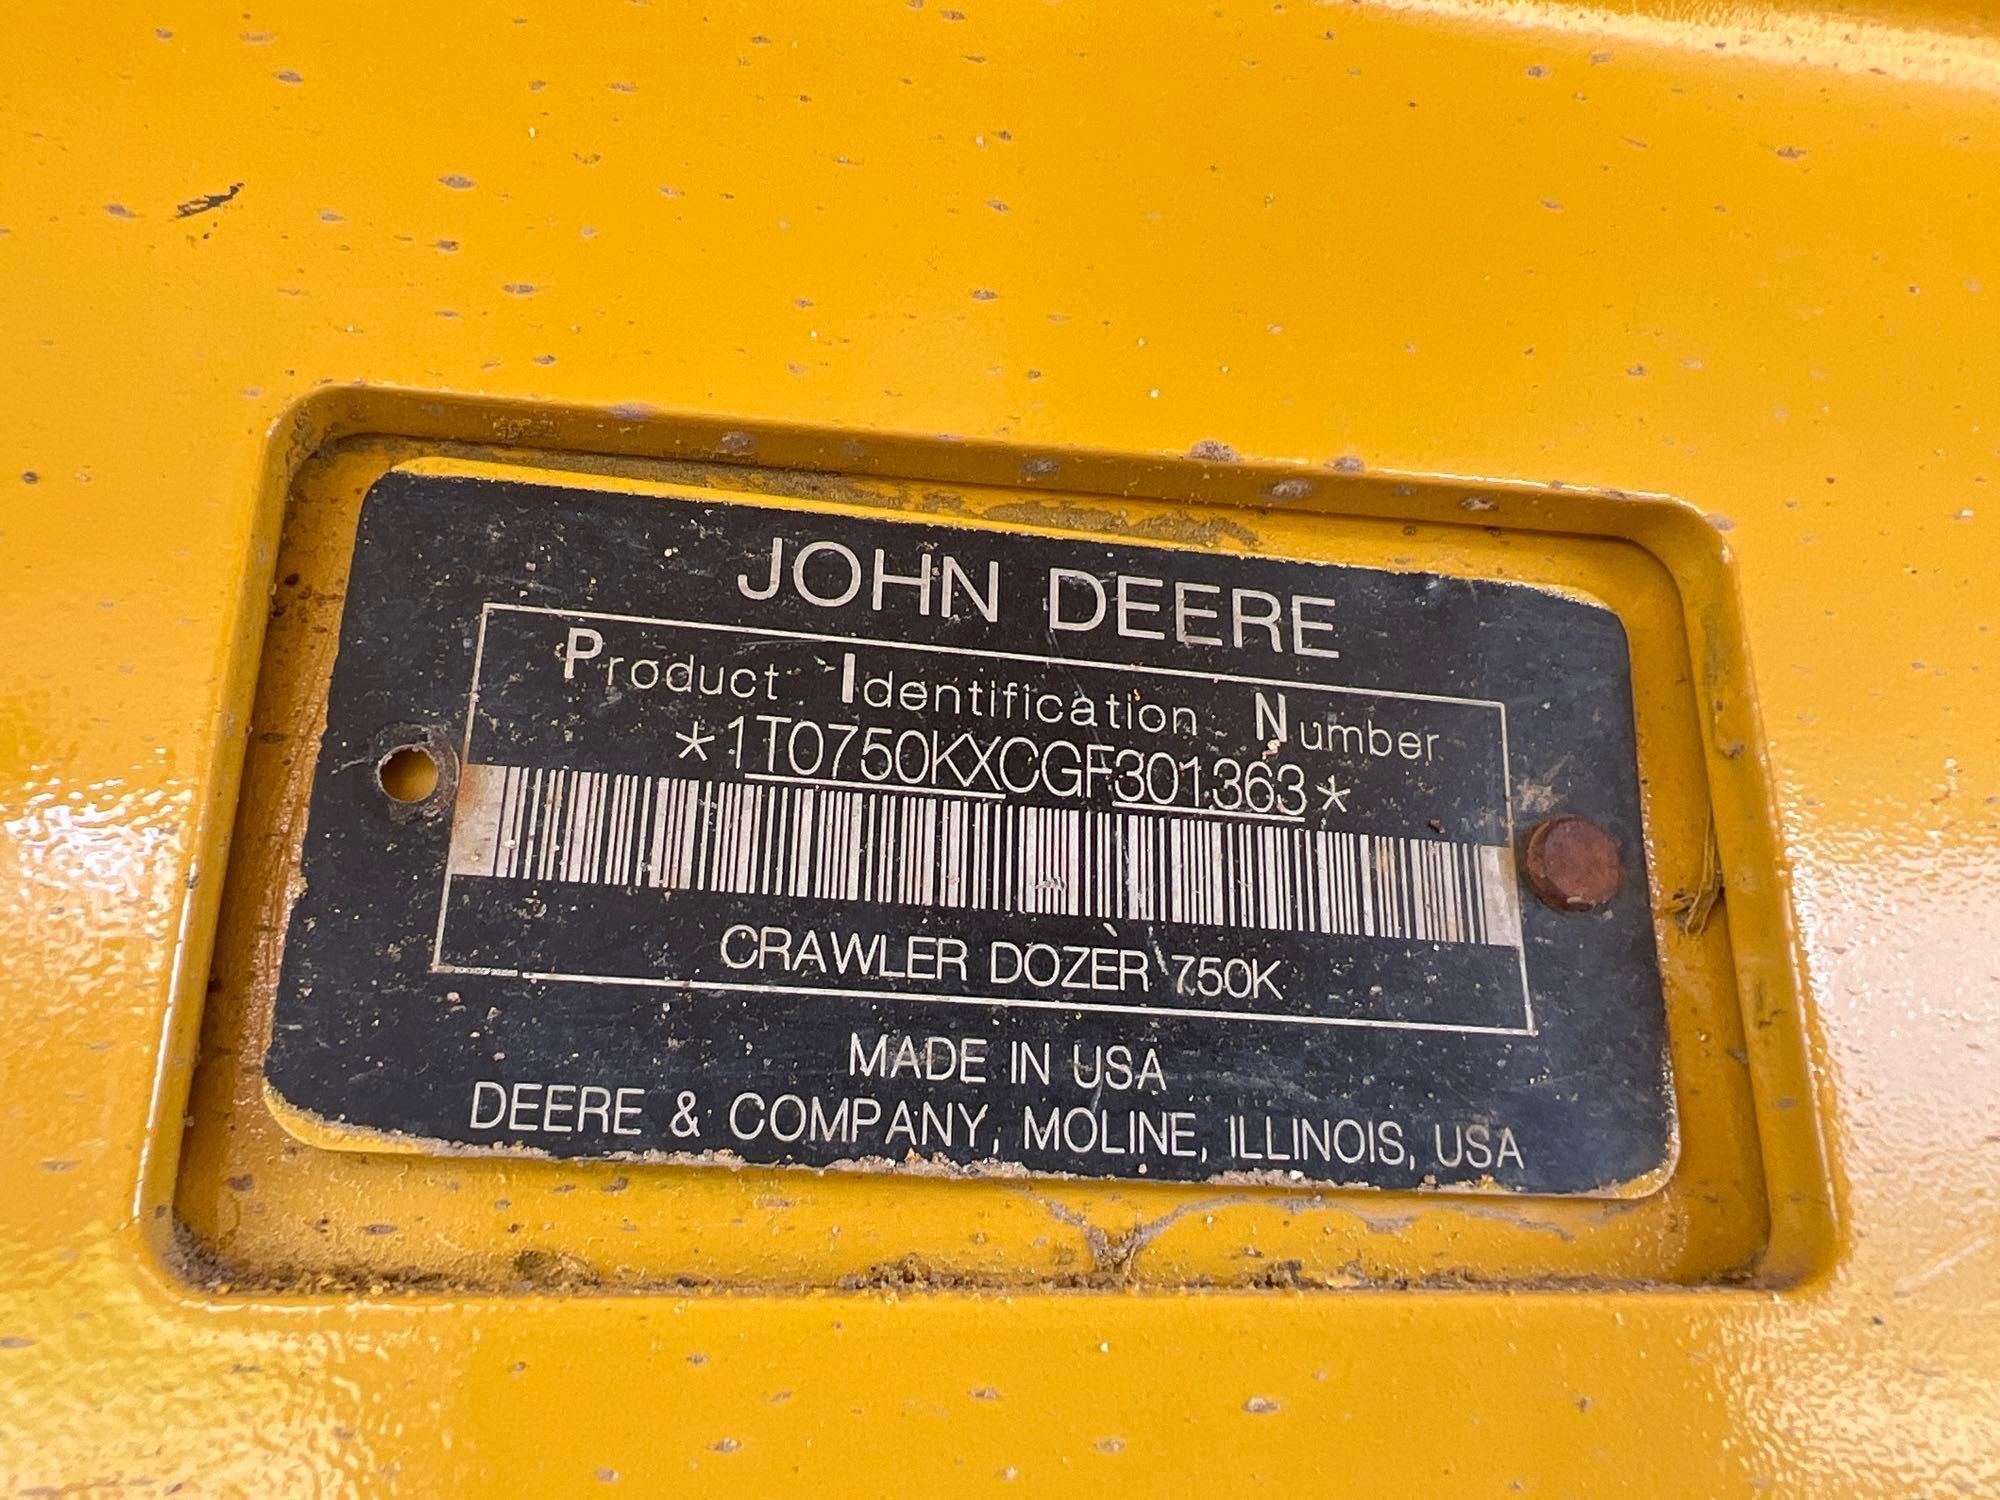 2018 JOHN DEERE 750KLGP CRAWLER TRACTOR SN:CGF301363 powered by John Deere diesel engine, equipped